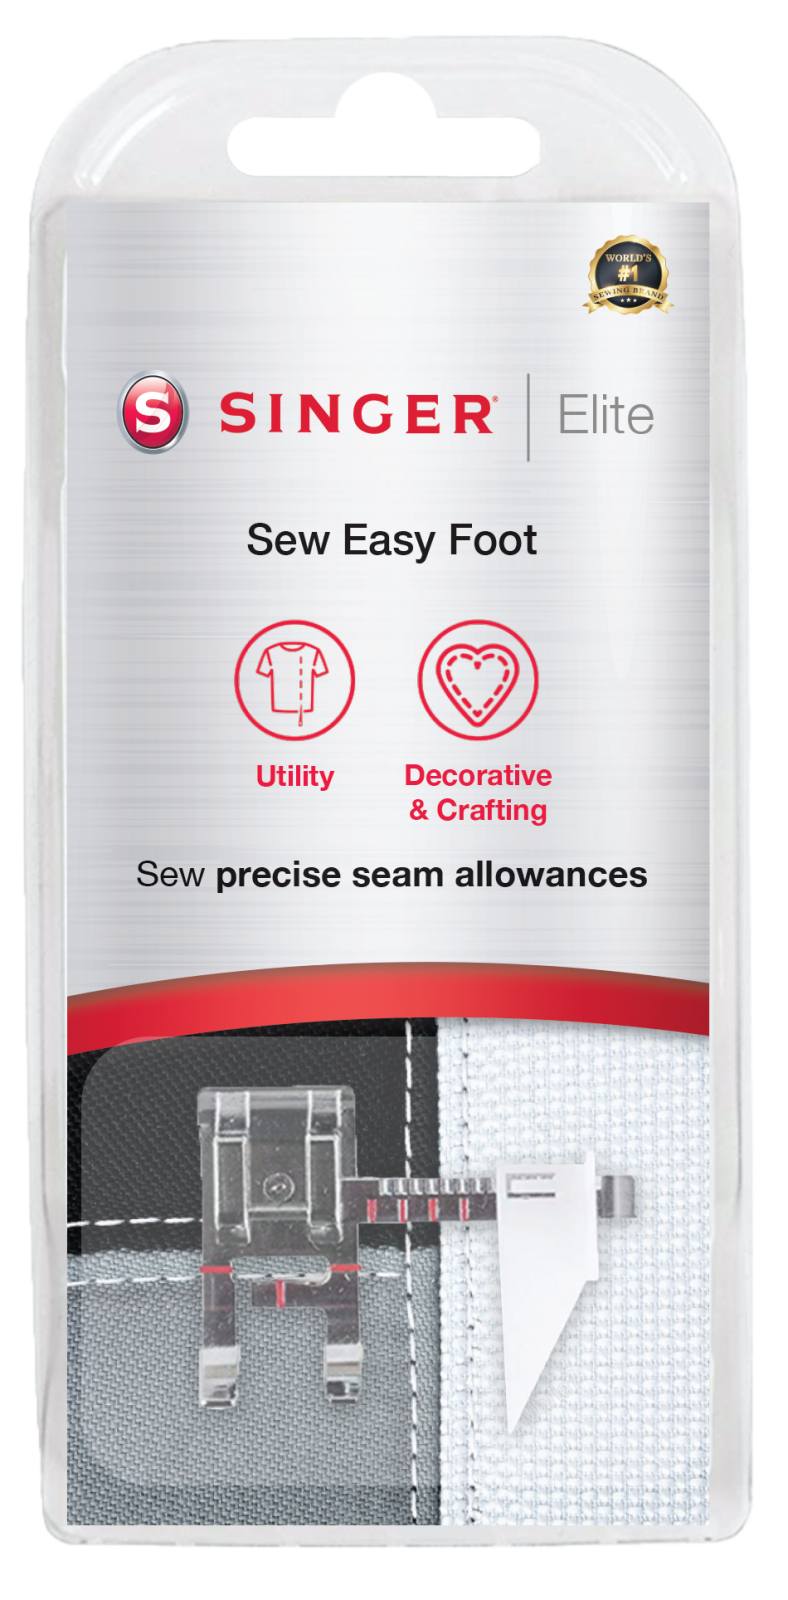 Singer Elite Sew Easy Foot